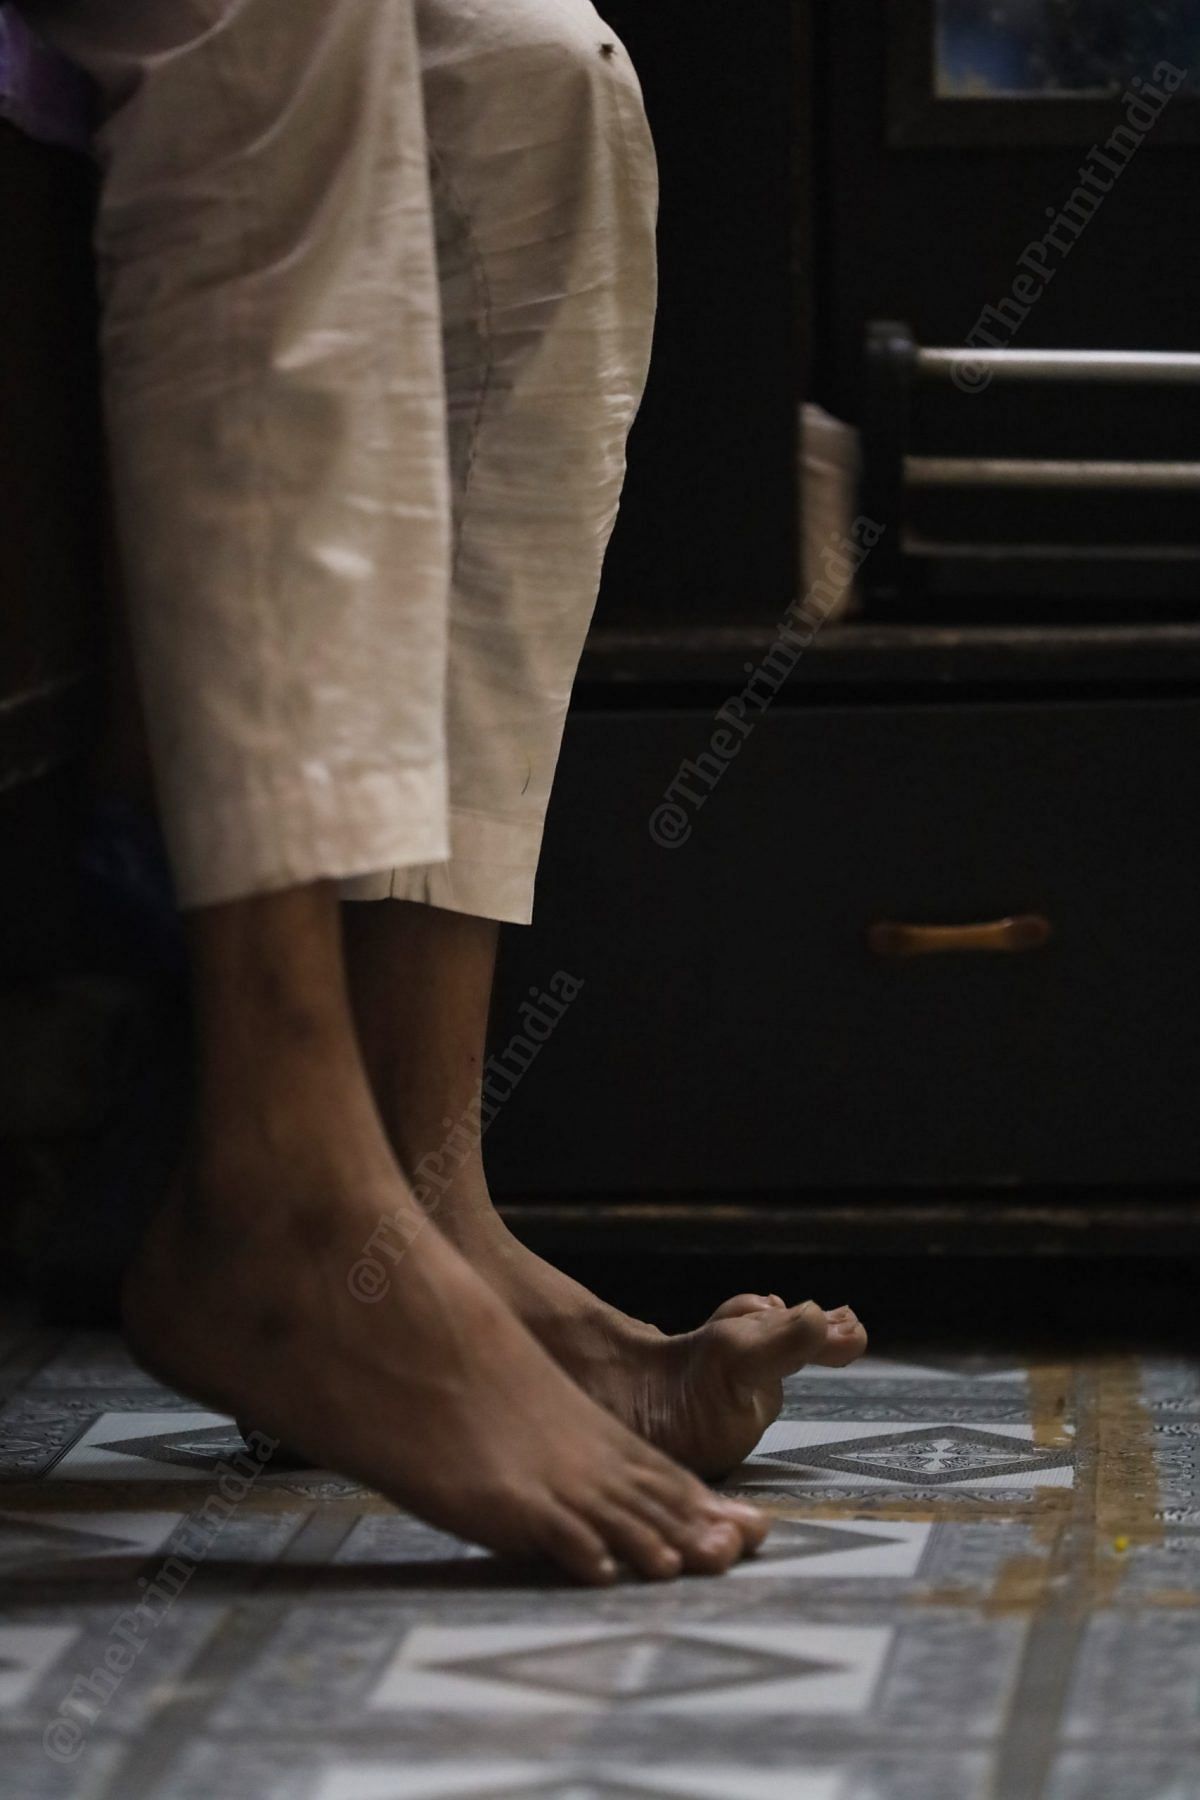 Faizan faces difficulty keeping his feet on the floor evenly | Photo: Manisha Mondal | ThePrint